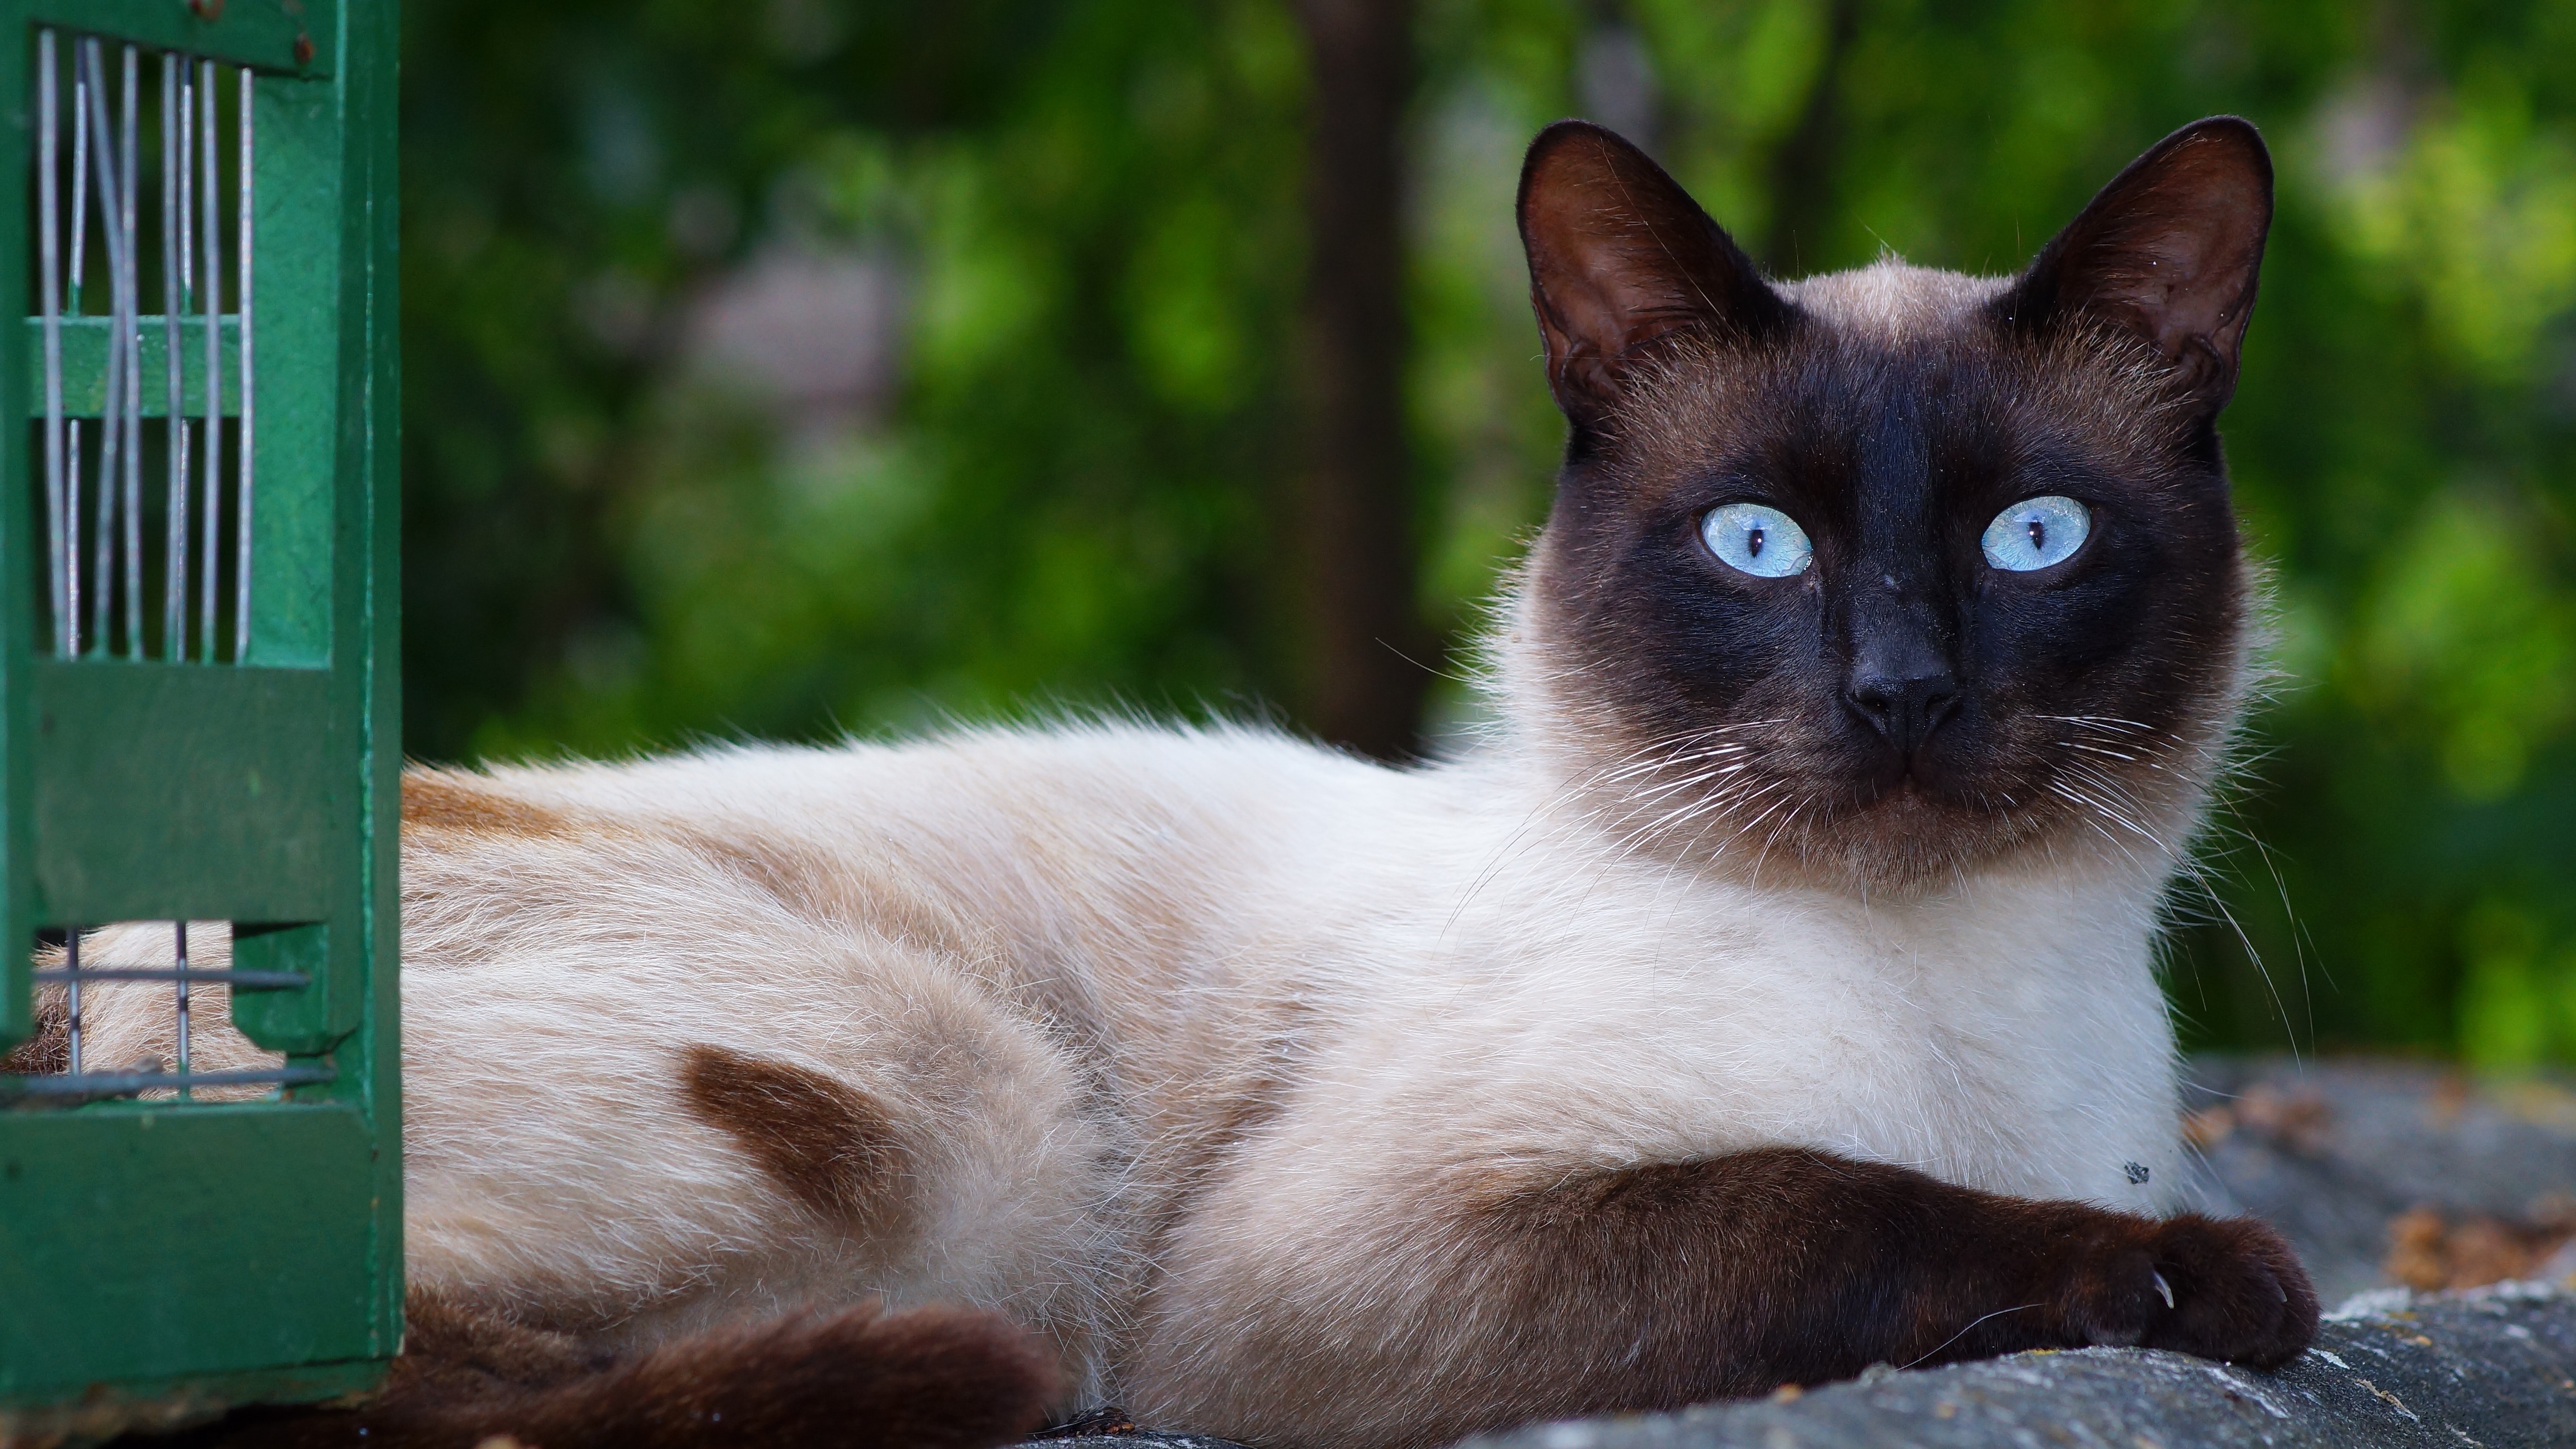 Close-up portrait of cat photo